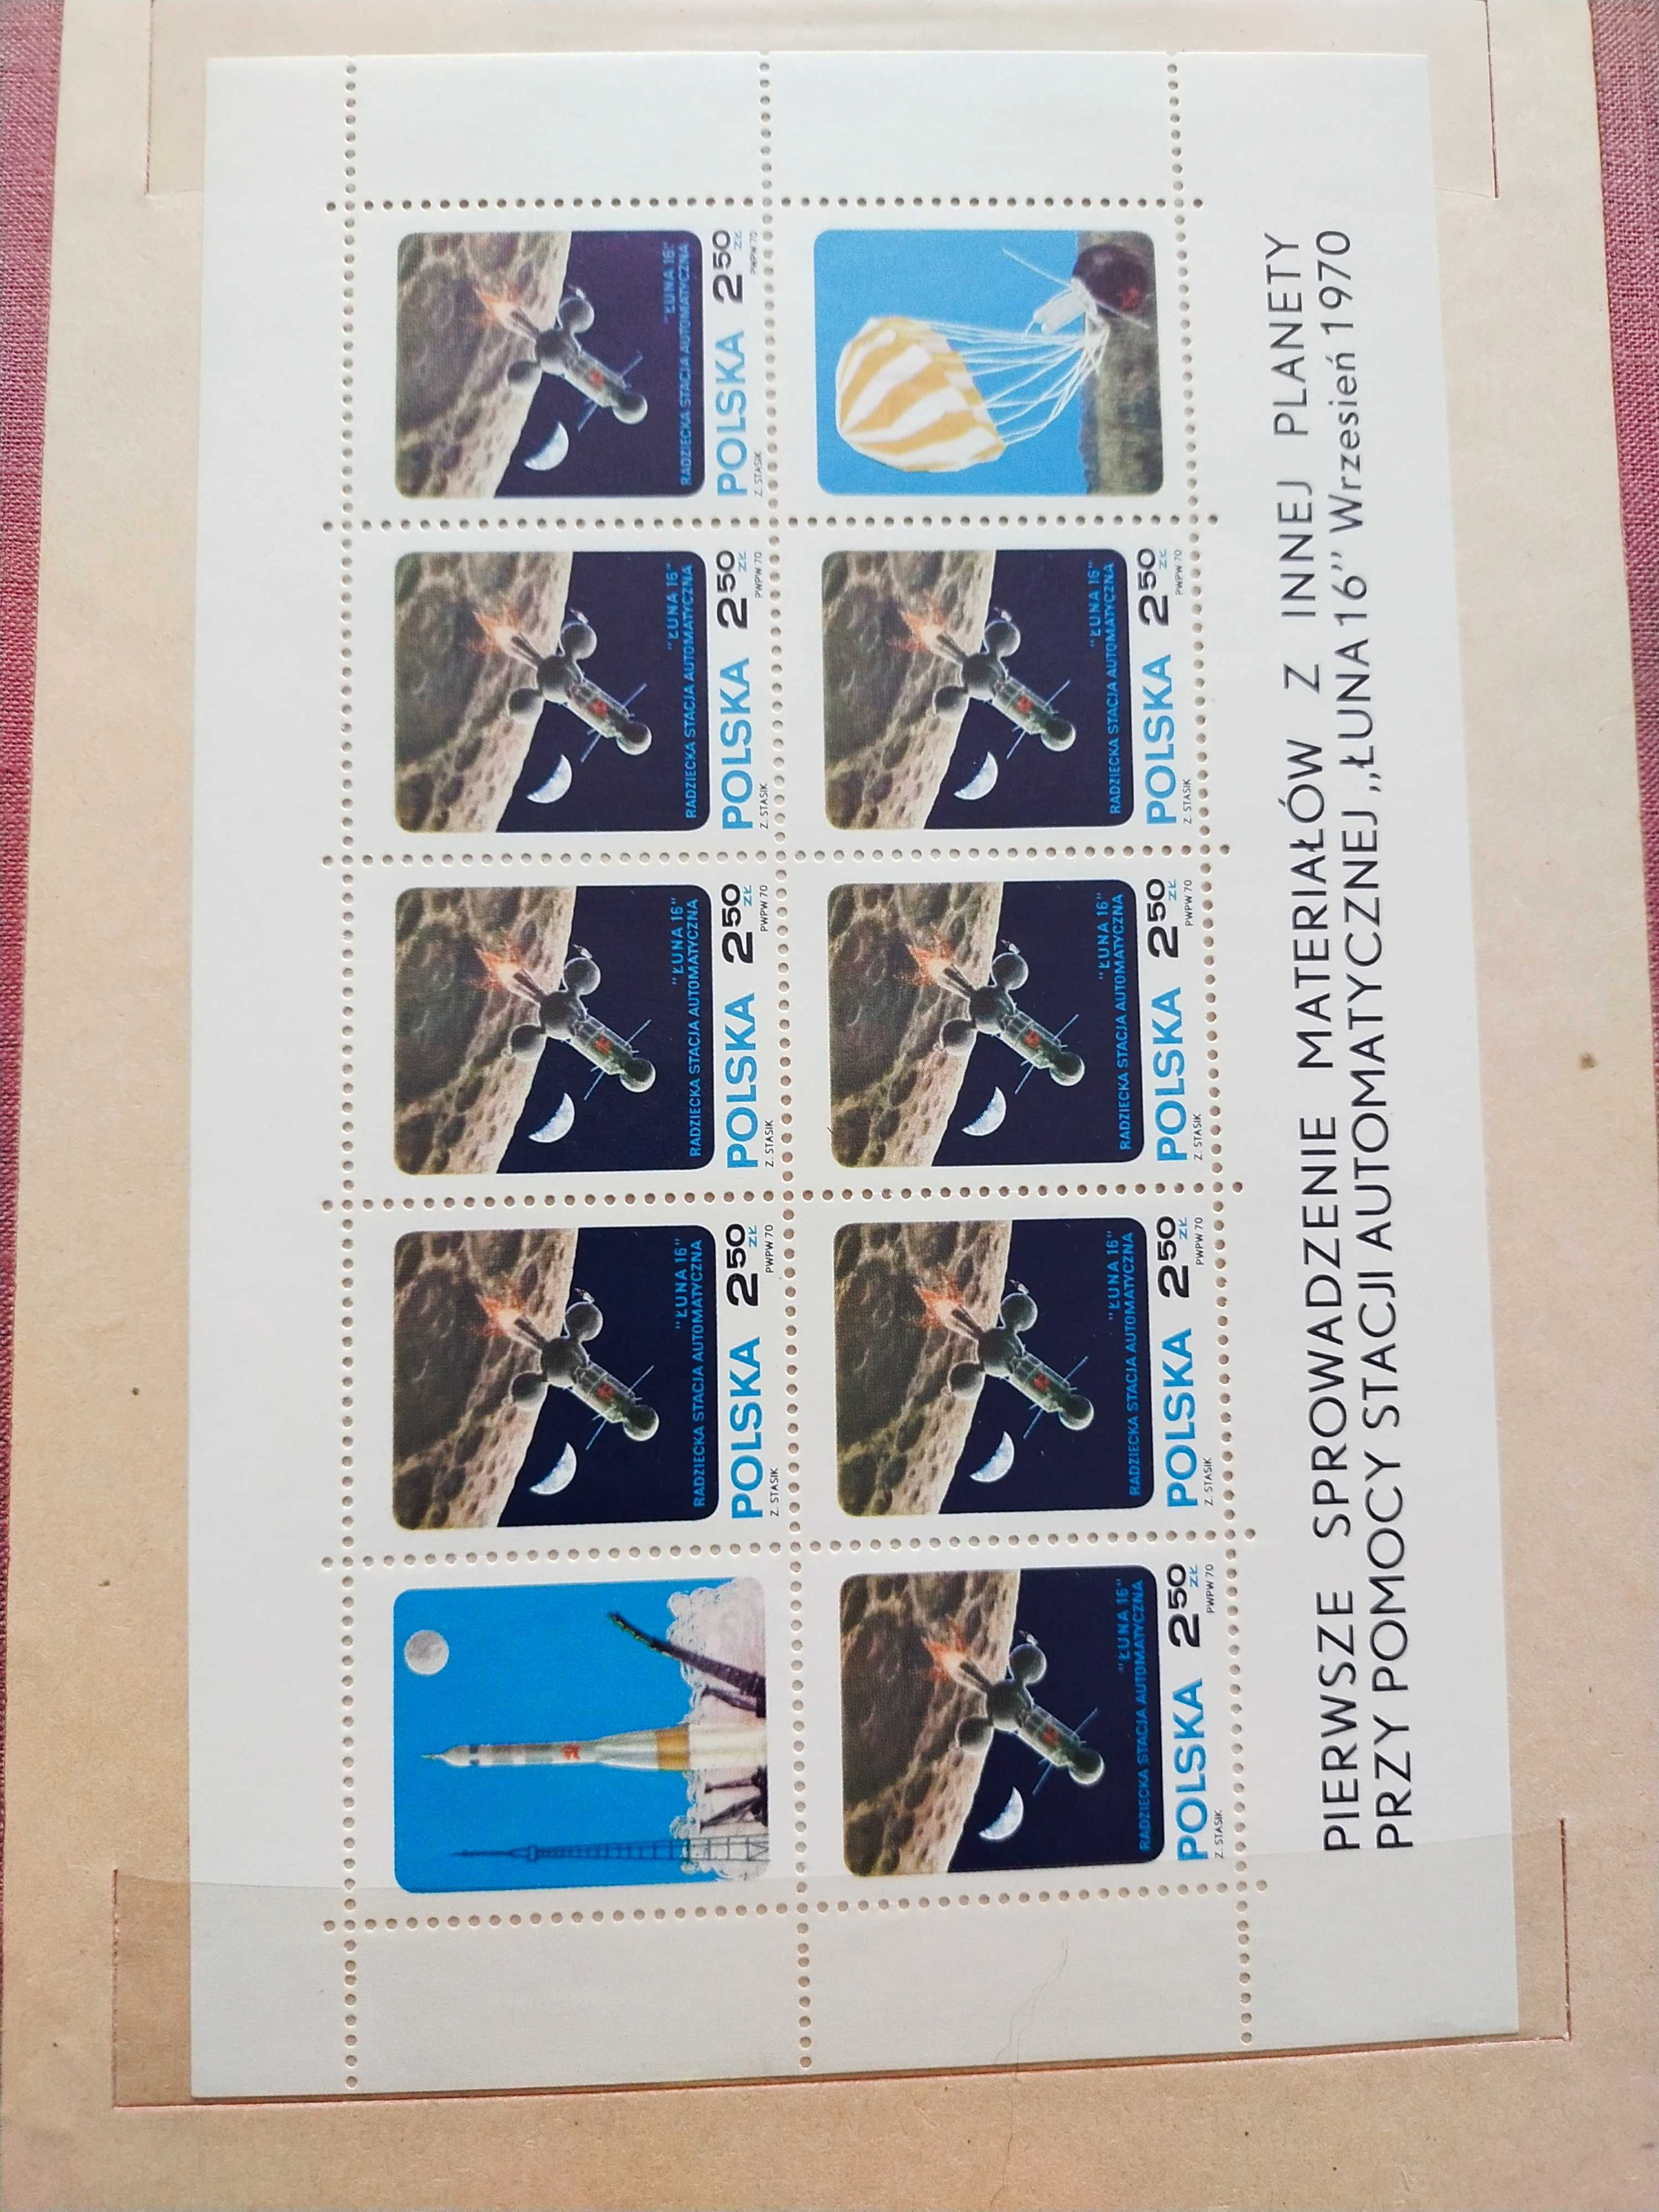 Klaser - tom jubileuszowy IX Polska 70-71 kompletny znaczki czyste